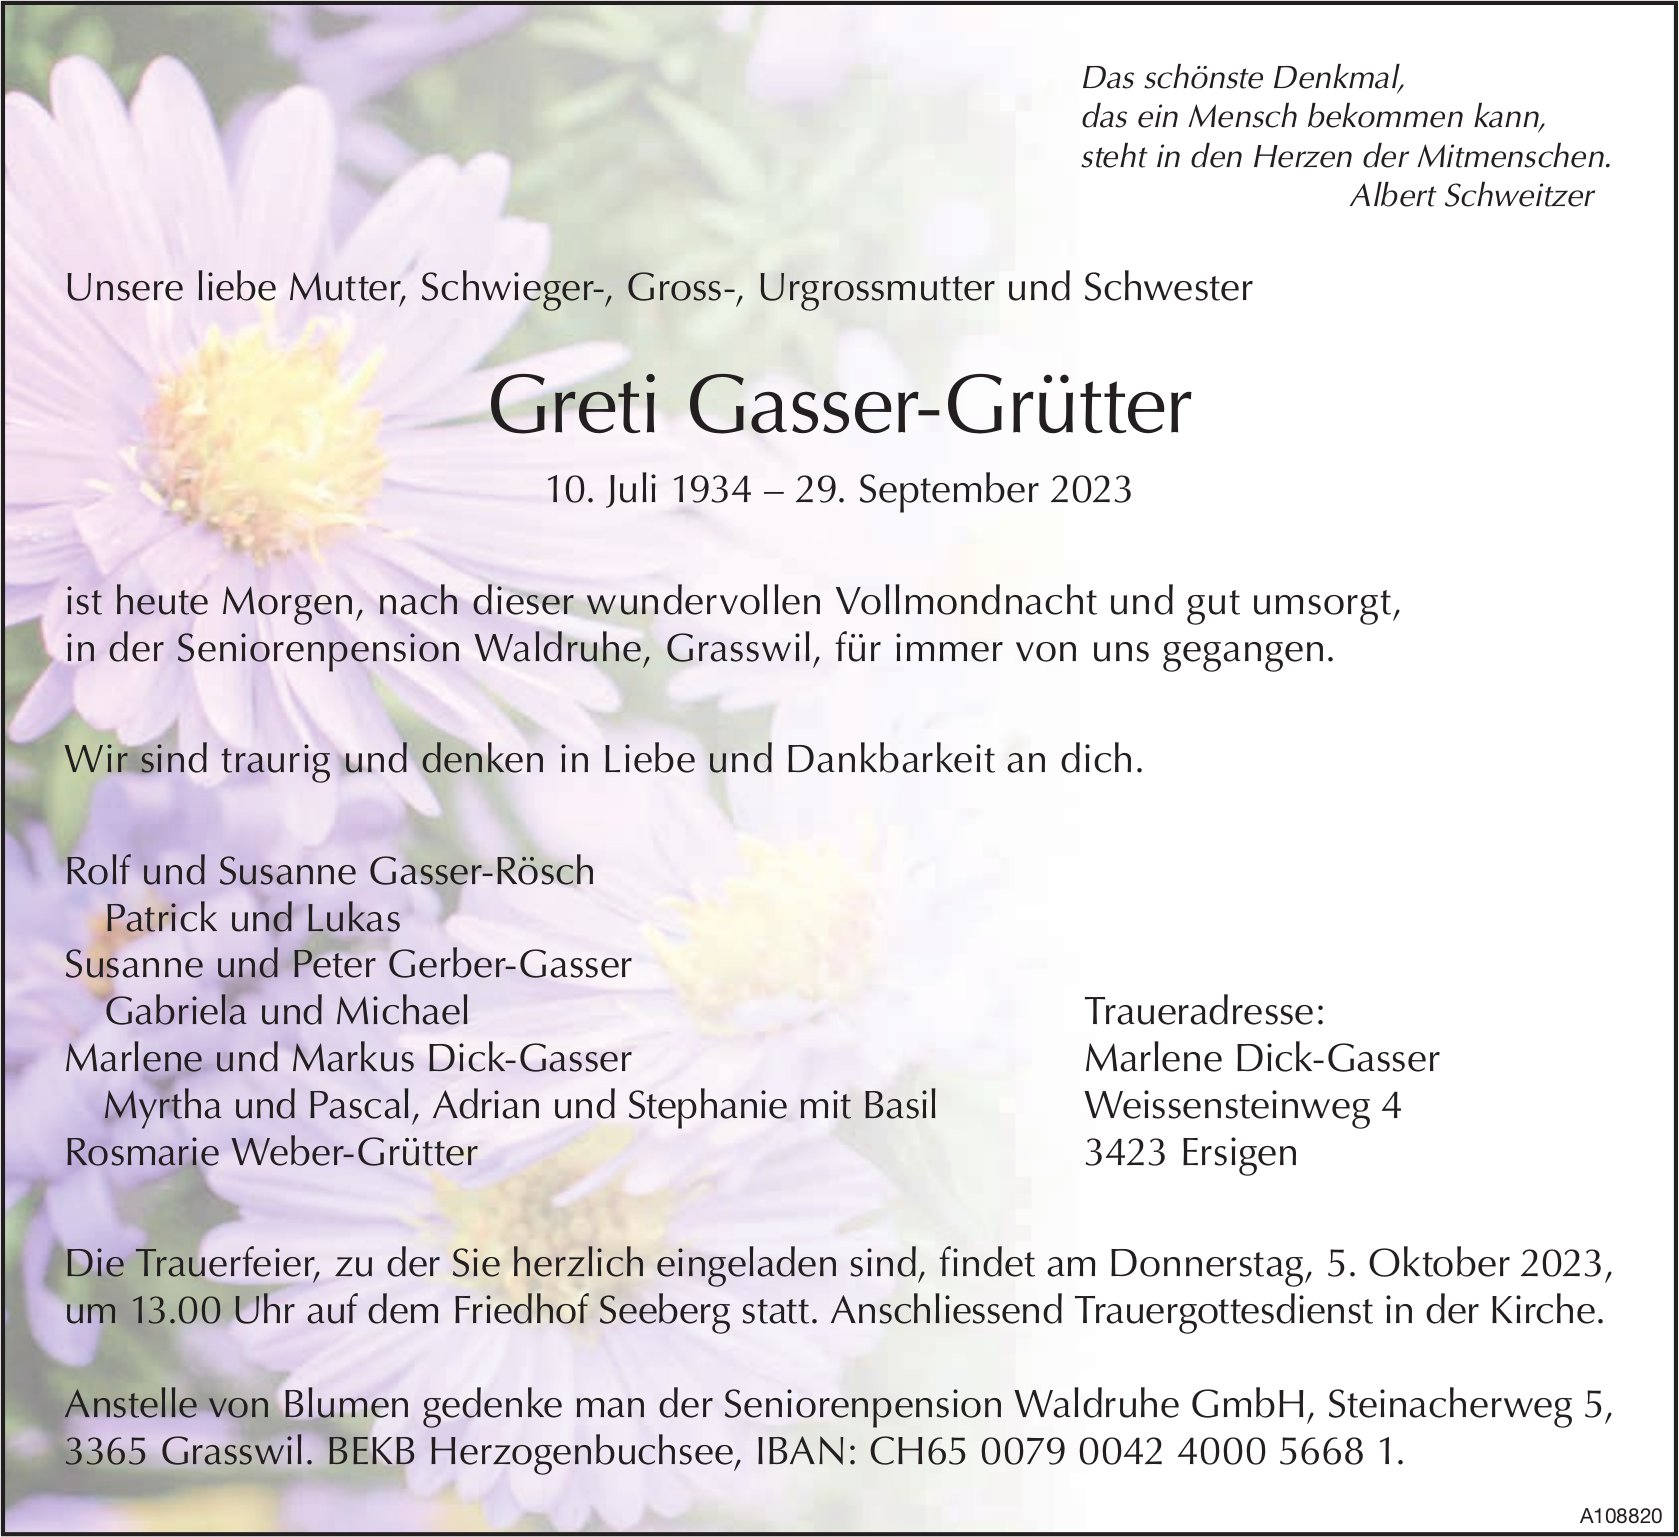 Greti Gasser-Grütter, September 2023 / TA